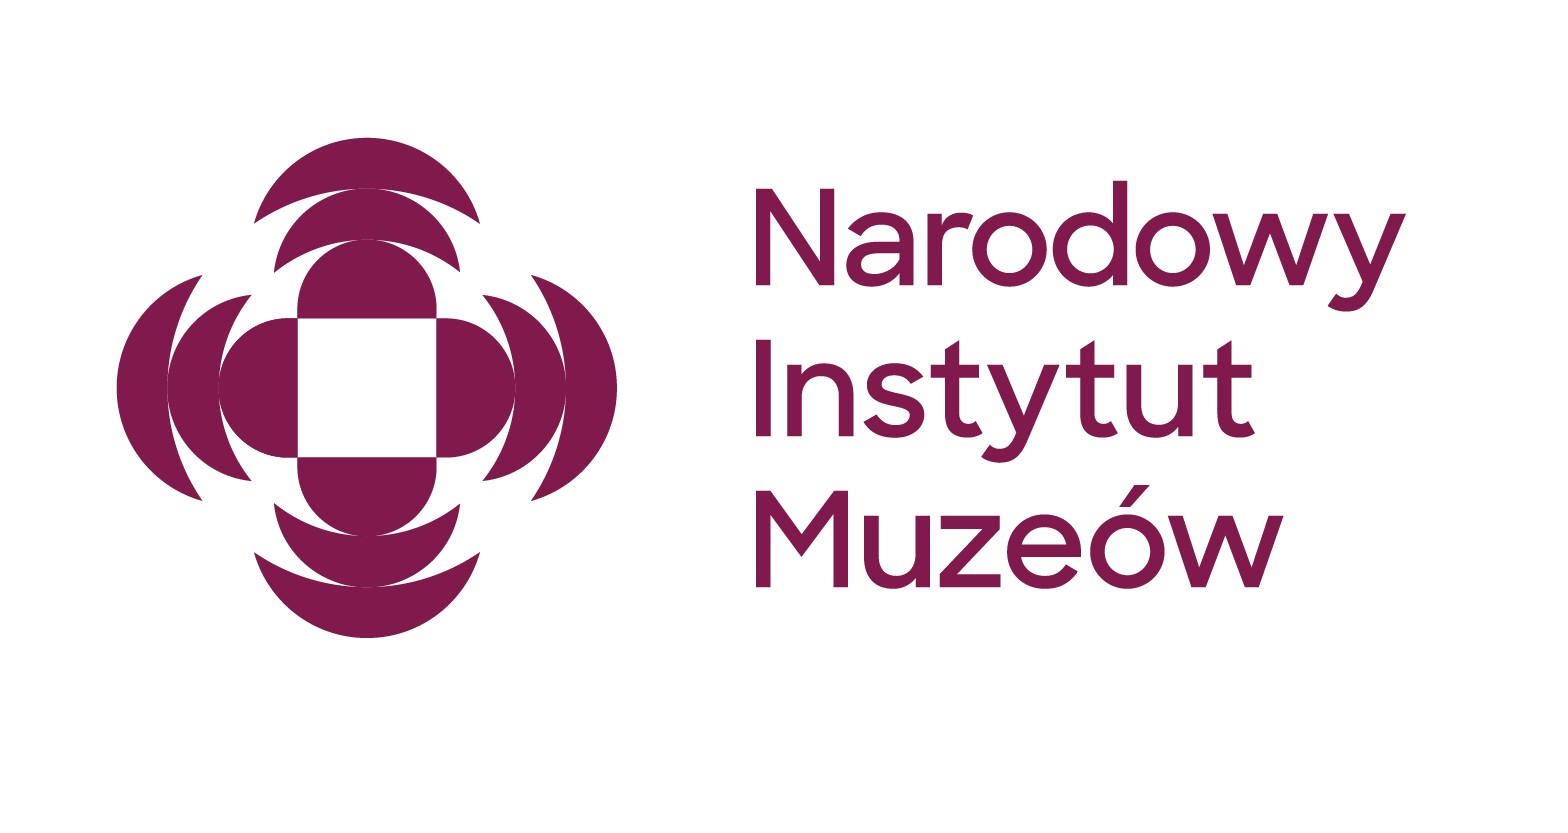 Logotyp Narodowego Instytutu Muzeów w kolorze purpurowym. 